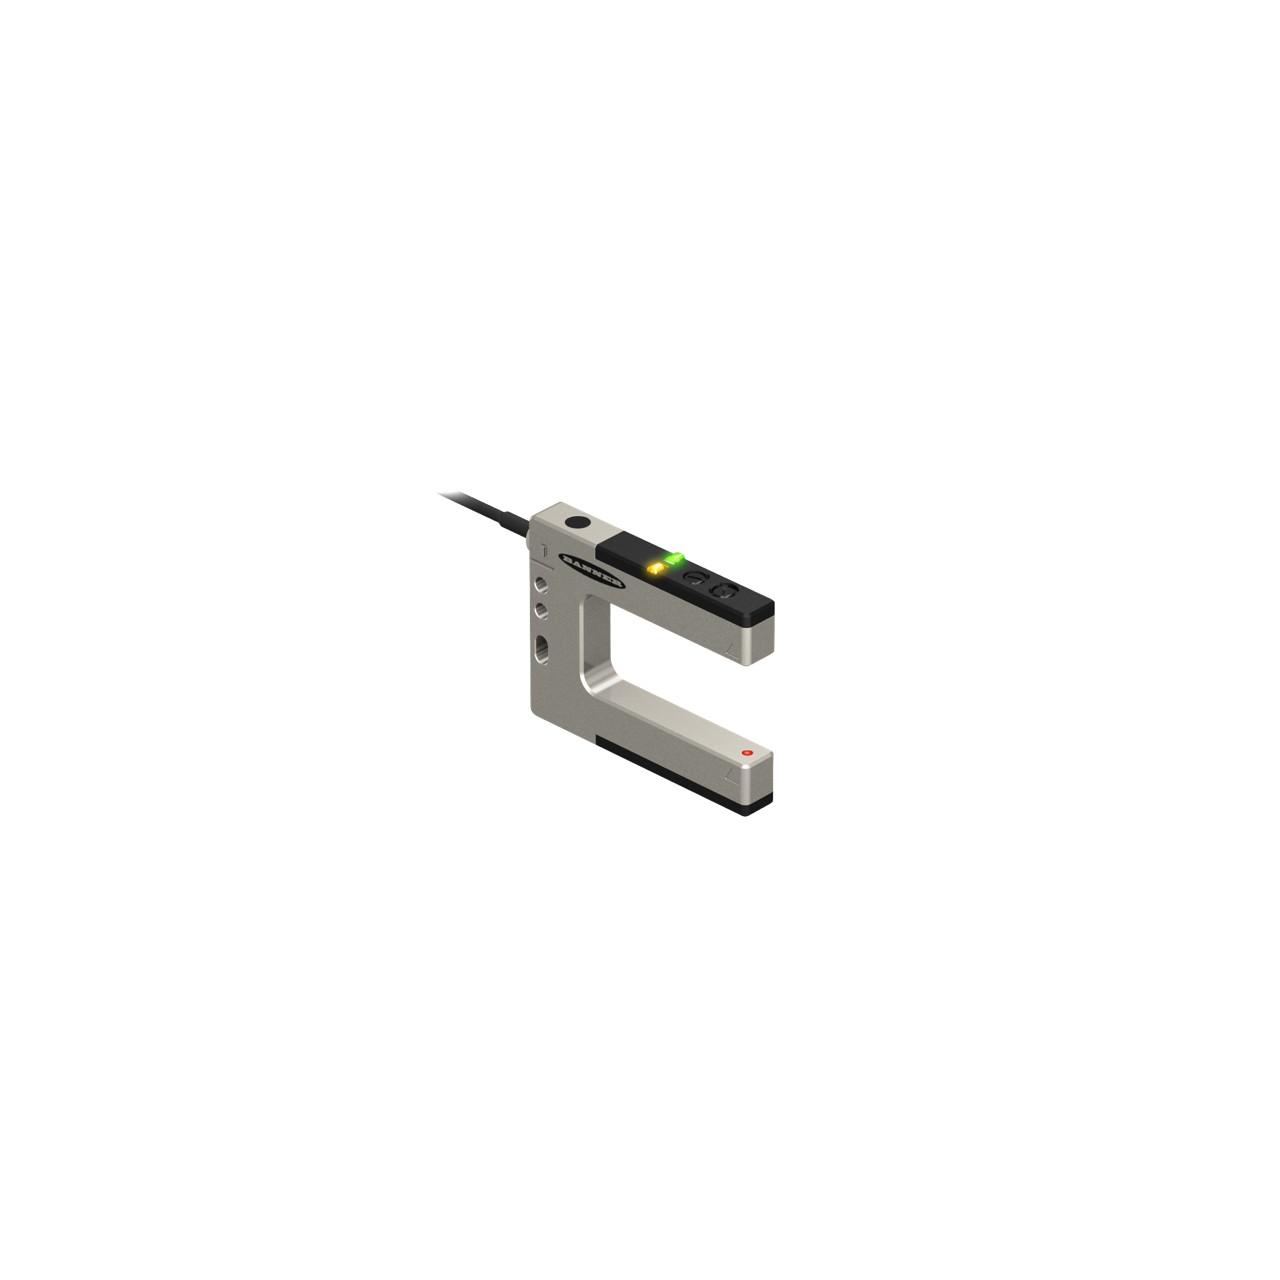 Banner SLM30B6 Photo-electric rugged metal slot / optical fork sensor - Banner Engineering (SLM series) - Part #74969 - slot width (passageway) 30mm - 1 x digital output (PNP/NPN transistor) (Light-ON or Dark-ON operation) - Supply voltage 10Vdc-30Vdc (12Vdc / 24Vdc nom